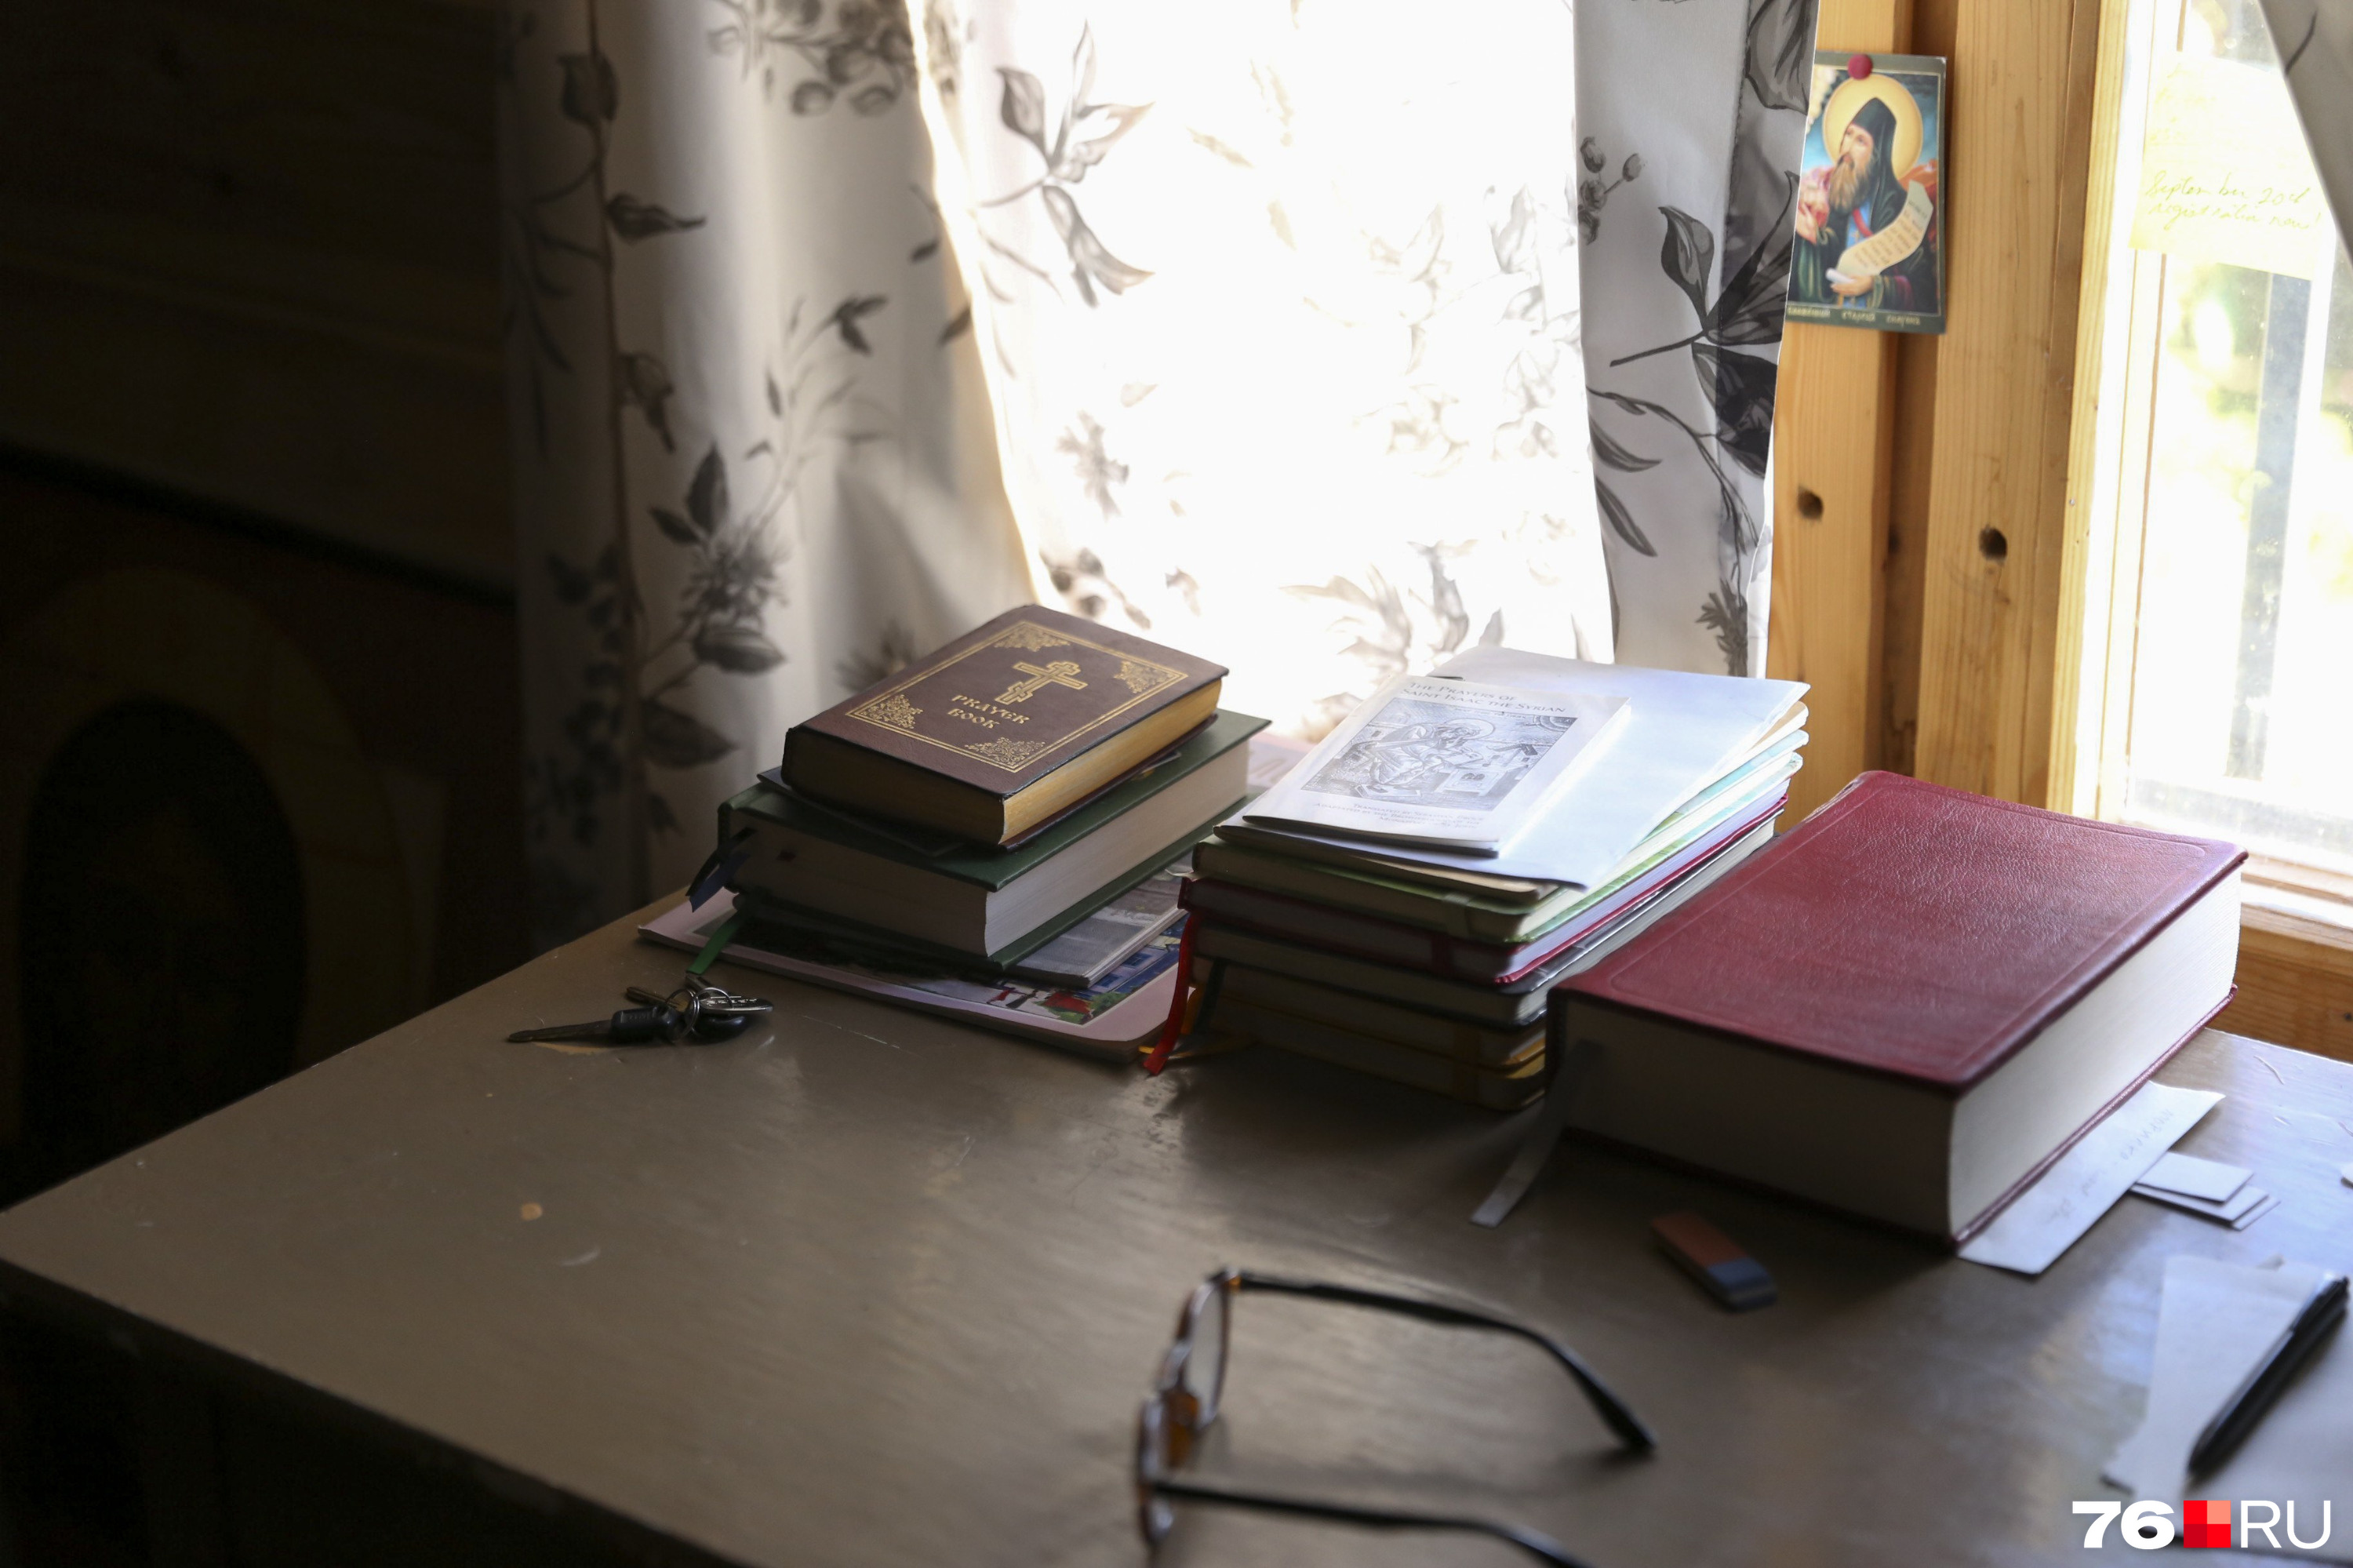 В доме много книг. Большинство из них православные